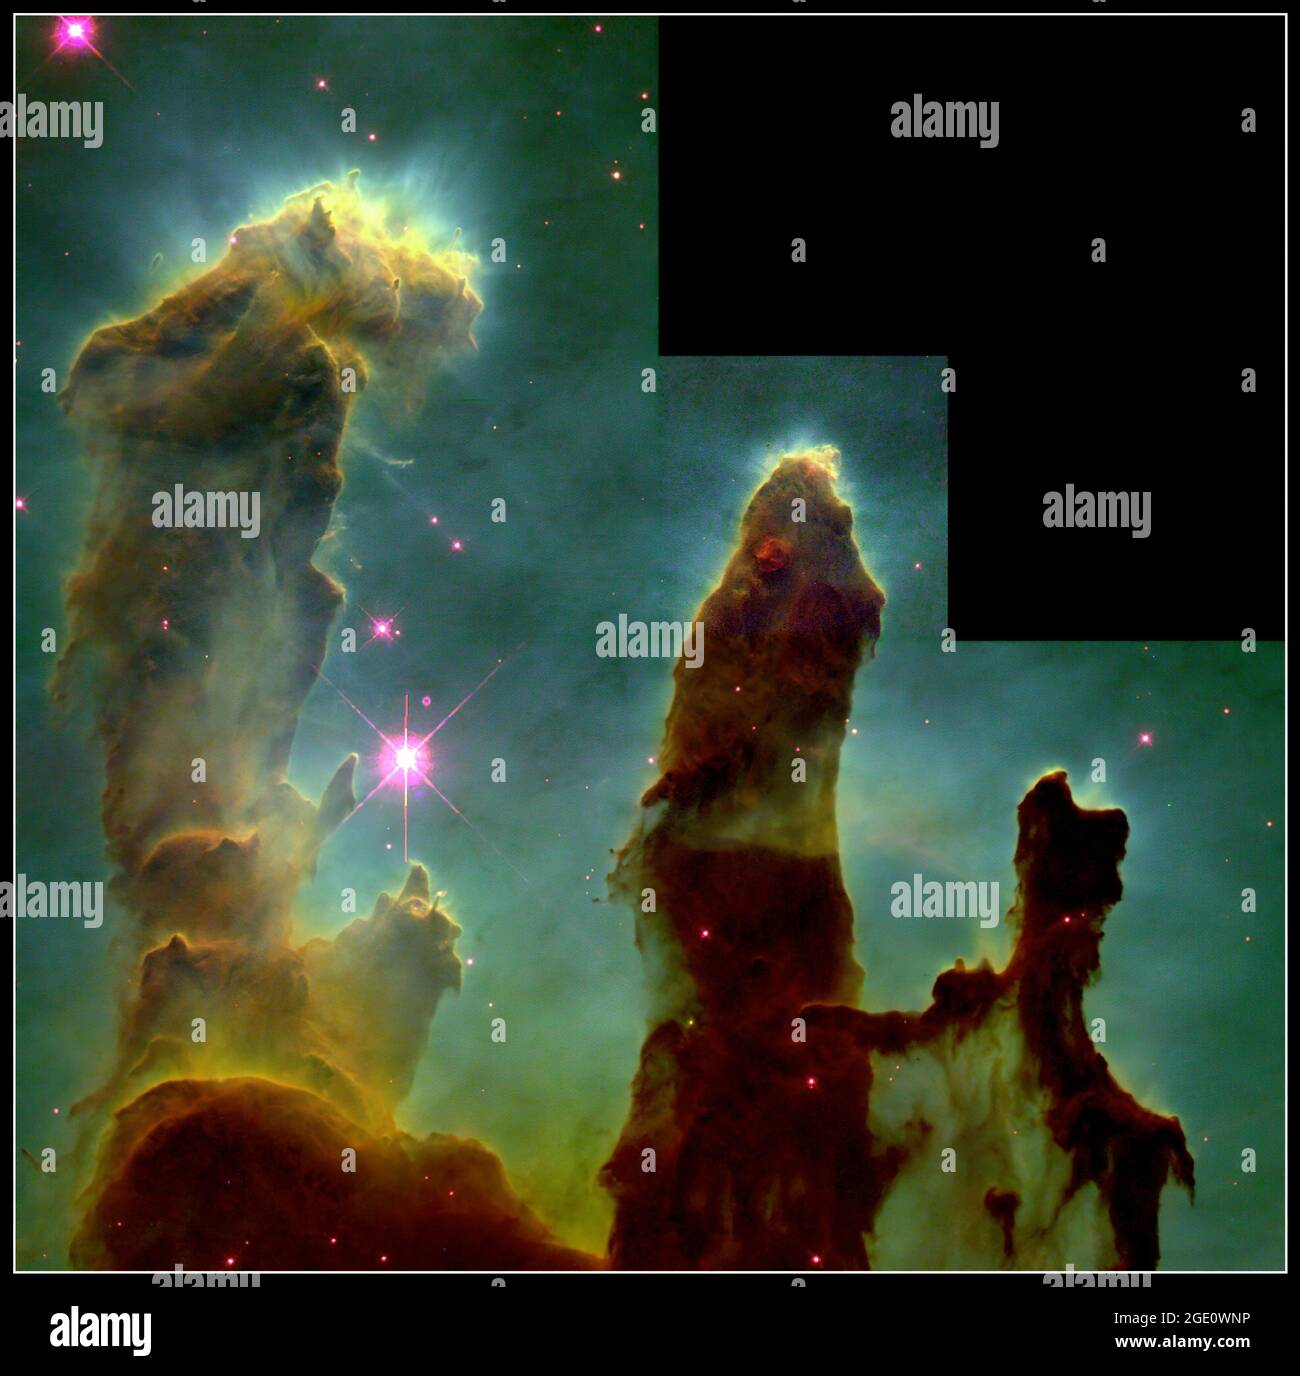 Ces structures étranges et sombres sont des colonnes de gaz hydrogène interstellaire frais et de poussière qui sont aussi des incubateurs pour de nouvelles étoiles. Les piliers dépassent du mur intérieur d'un nuage moléculaire sombre comme les stalagmites du sol d'une caverne. Ils font partie de la 'Eagle Nebula' (également appelée M16 -- le 16ème objet dans le catalogue des objets 'flous' de Charles Messier du 18ème siècle qui ne sont pas des comètes), une région à proximité formant des étoiles à 7000 années-lumière dans la constellation de Serens. La lumière ultraviolette est responsable de l'éclairage des surfaces convoluées des colonnes et du banderole fantomatique Banque D'Images